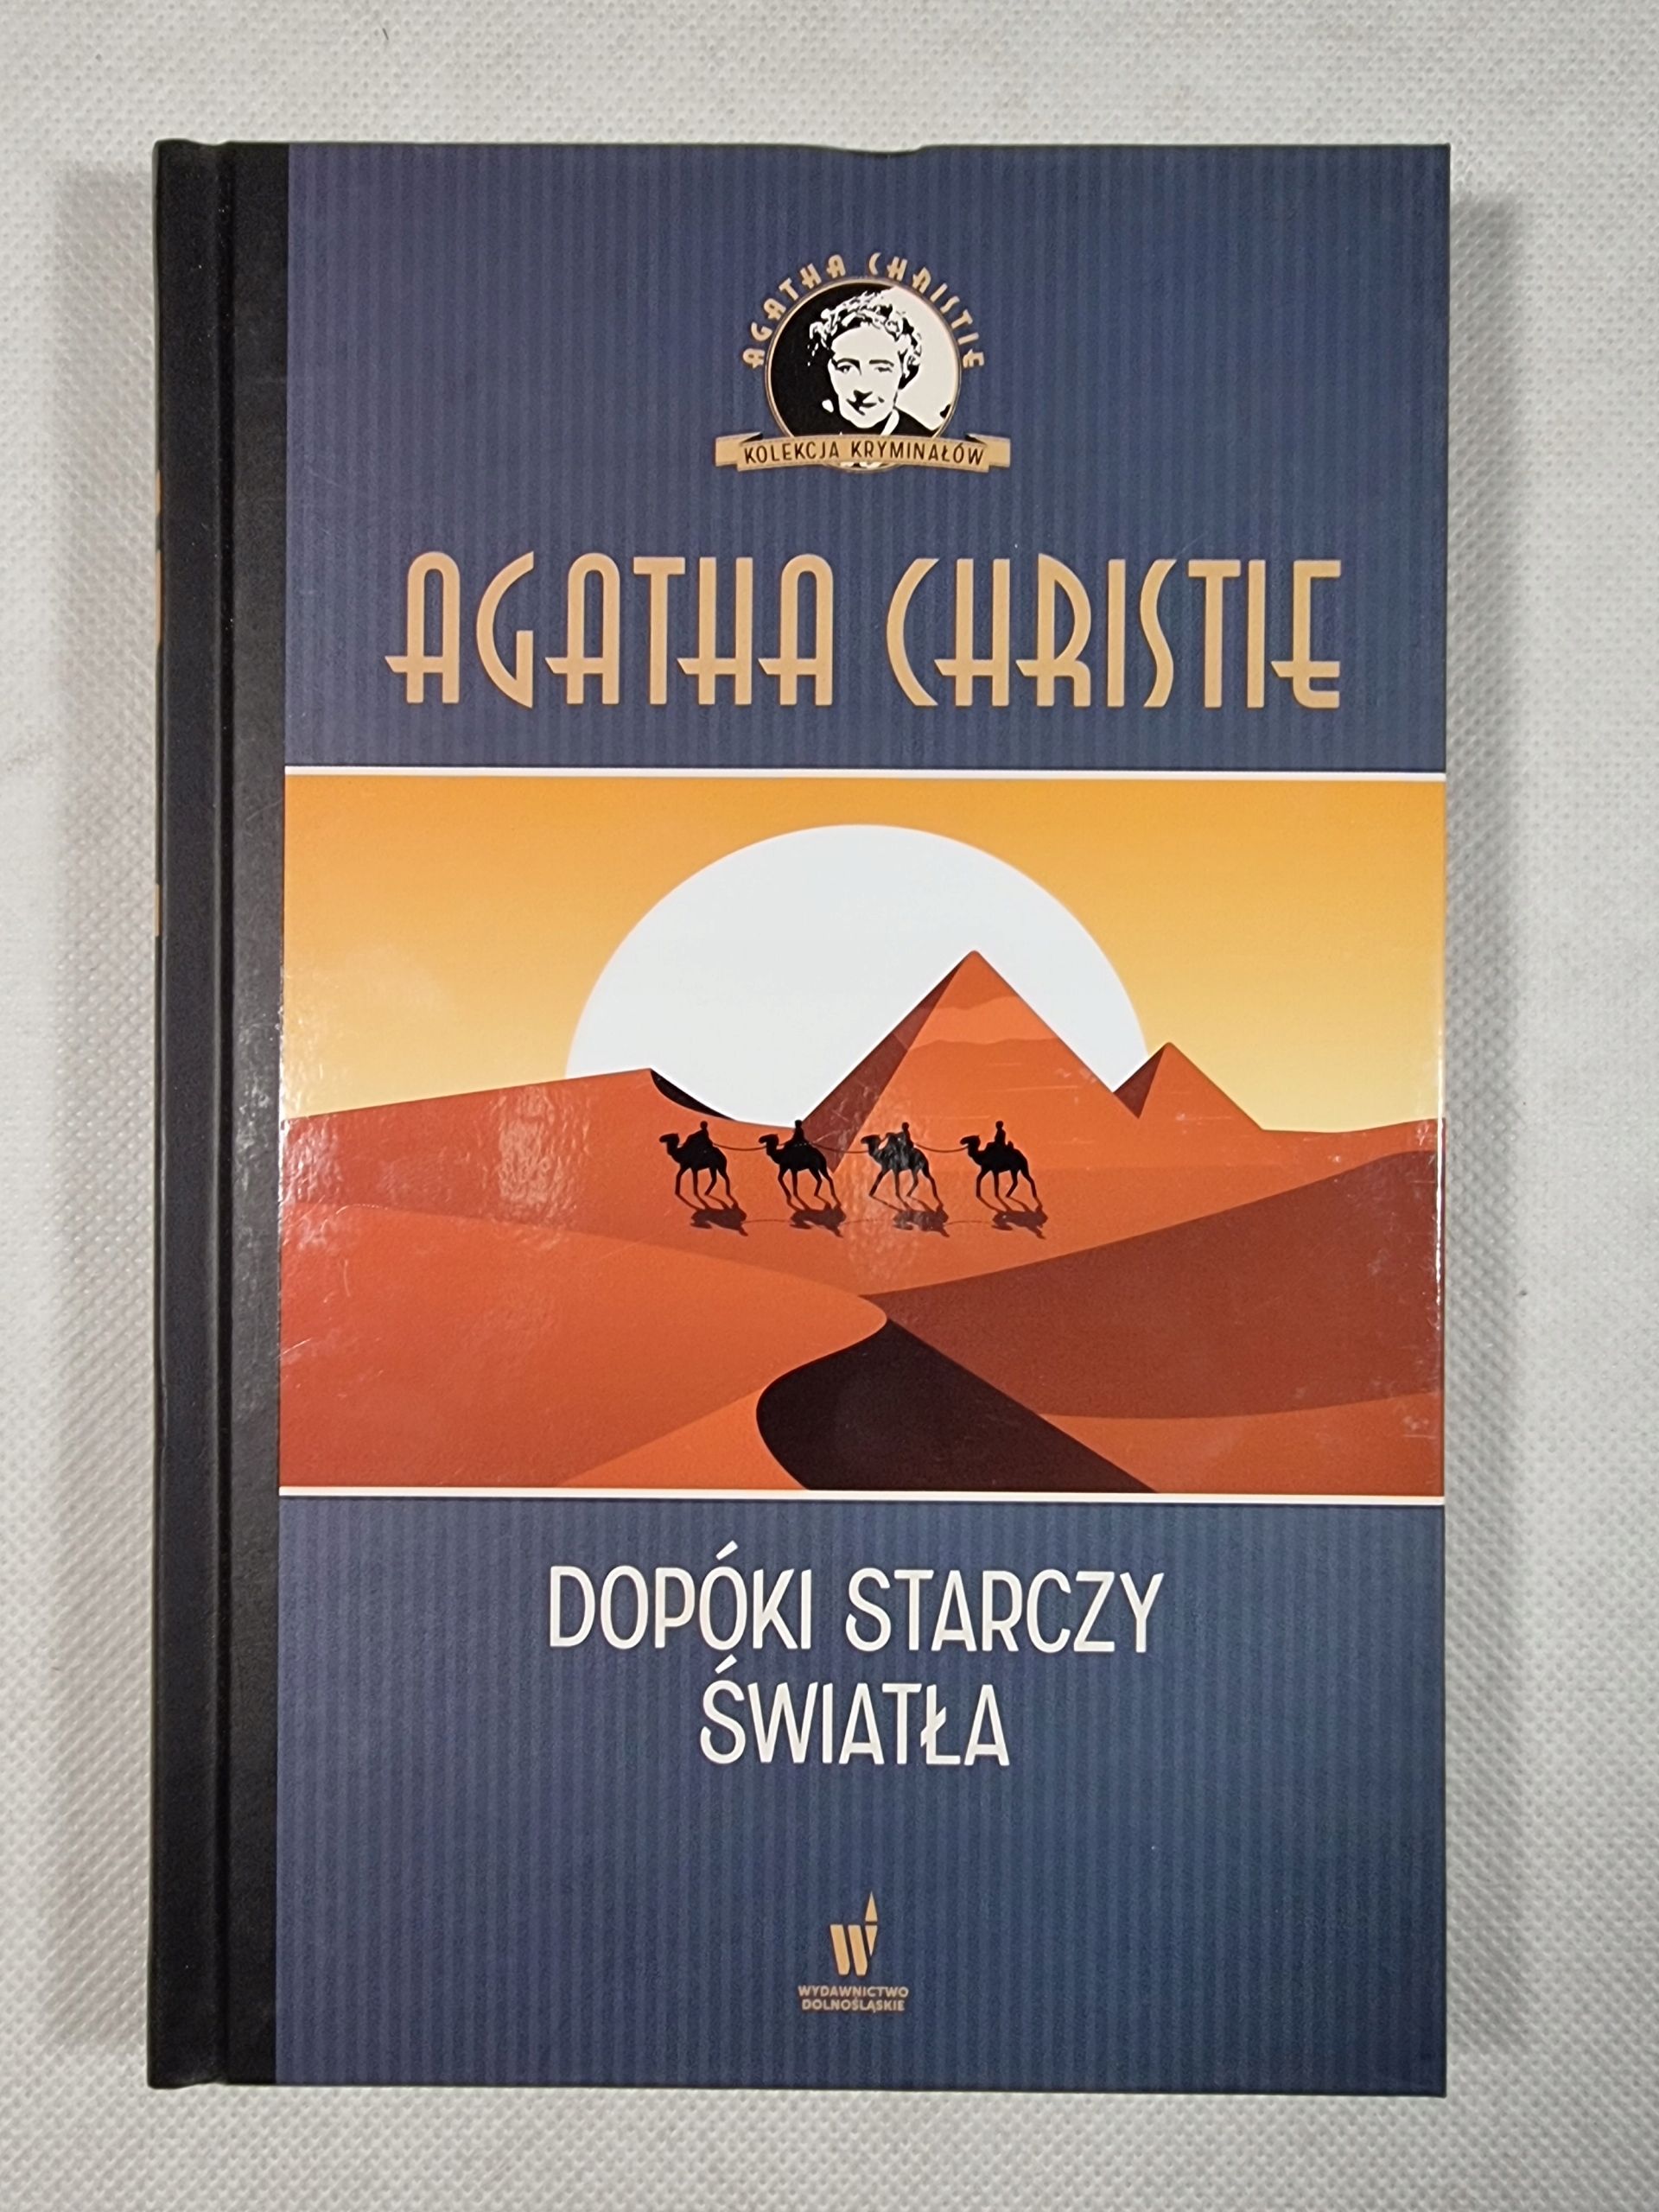 Dopóki Starczy Światła / Tom 14 / Agatha Christie